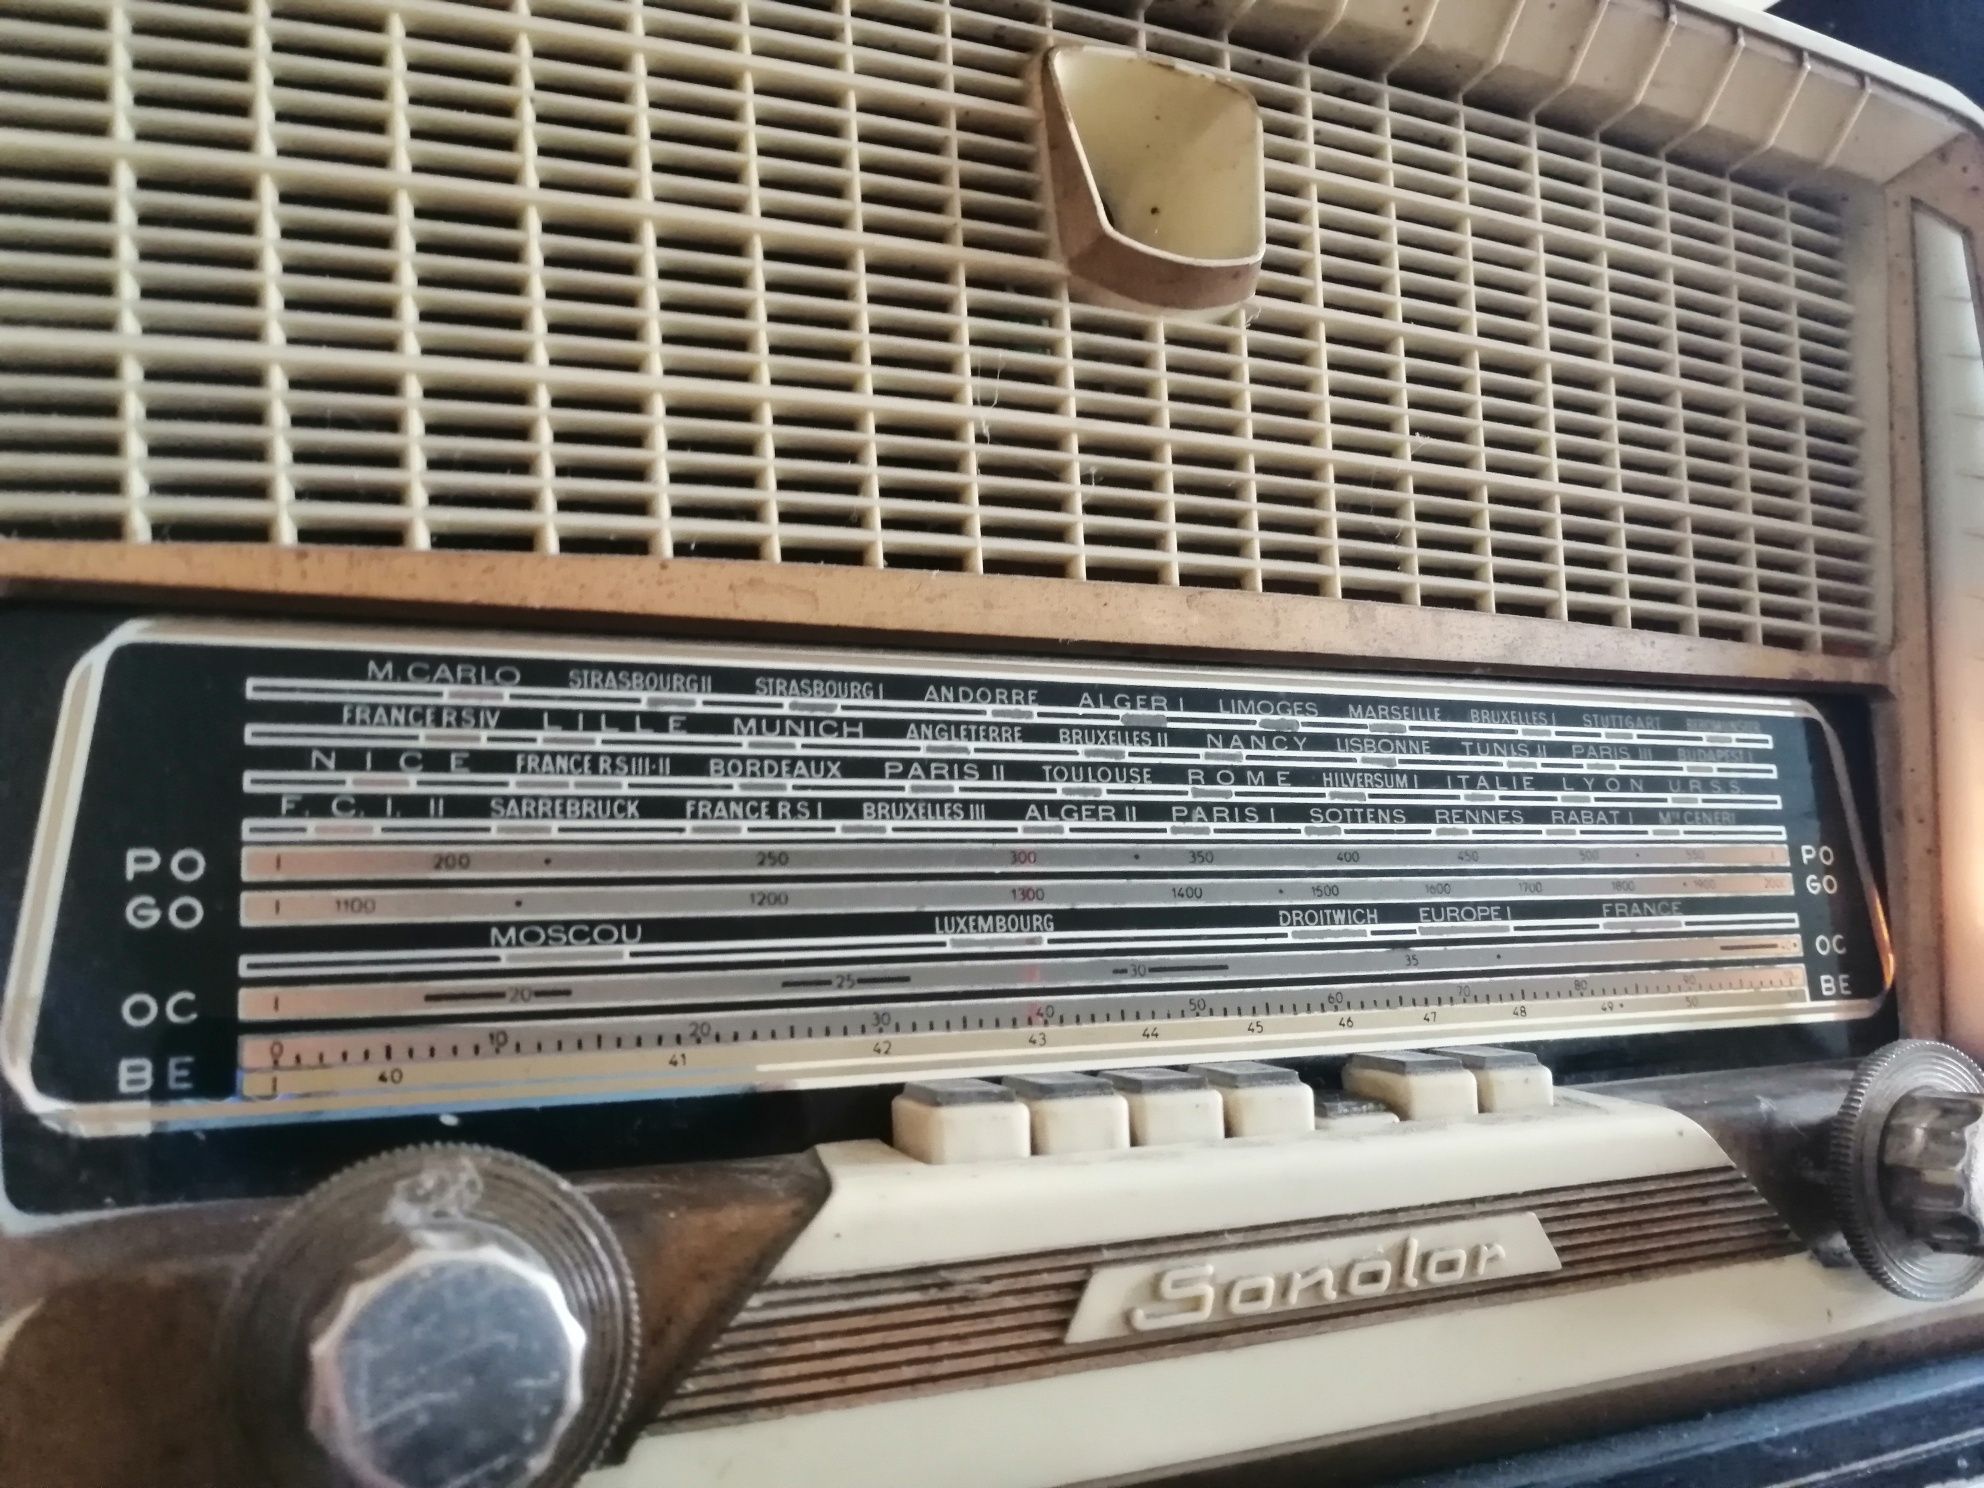 Radio francuskie z lat 50 tych. "Sonolar"